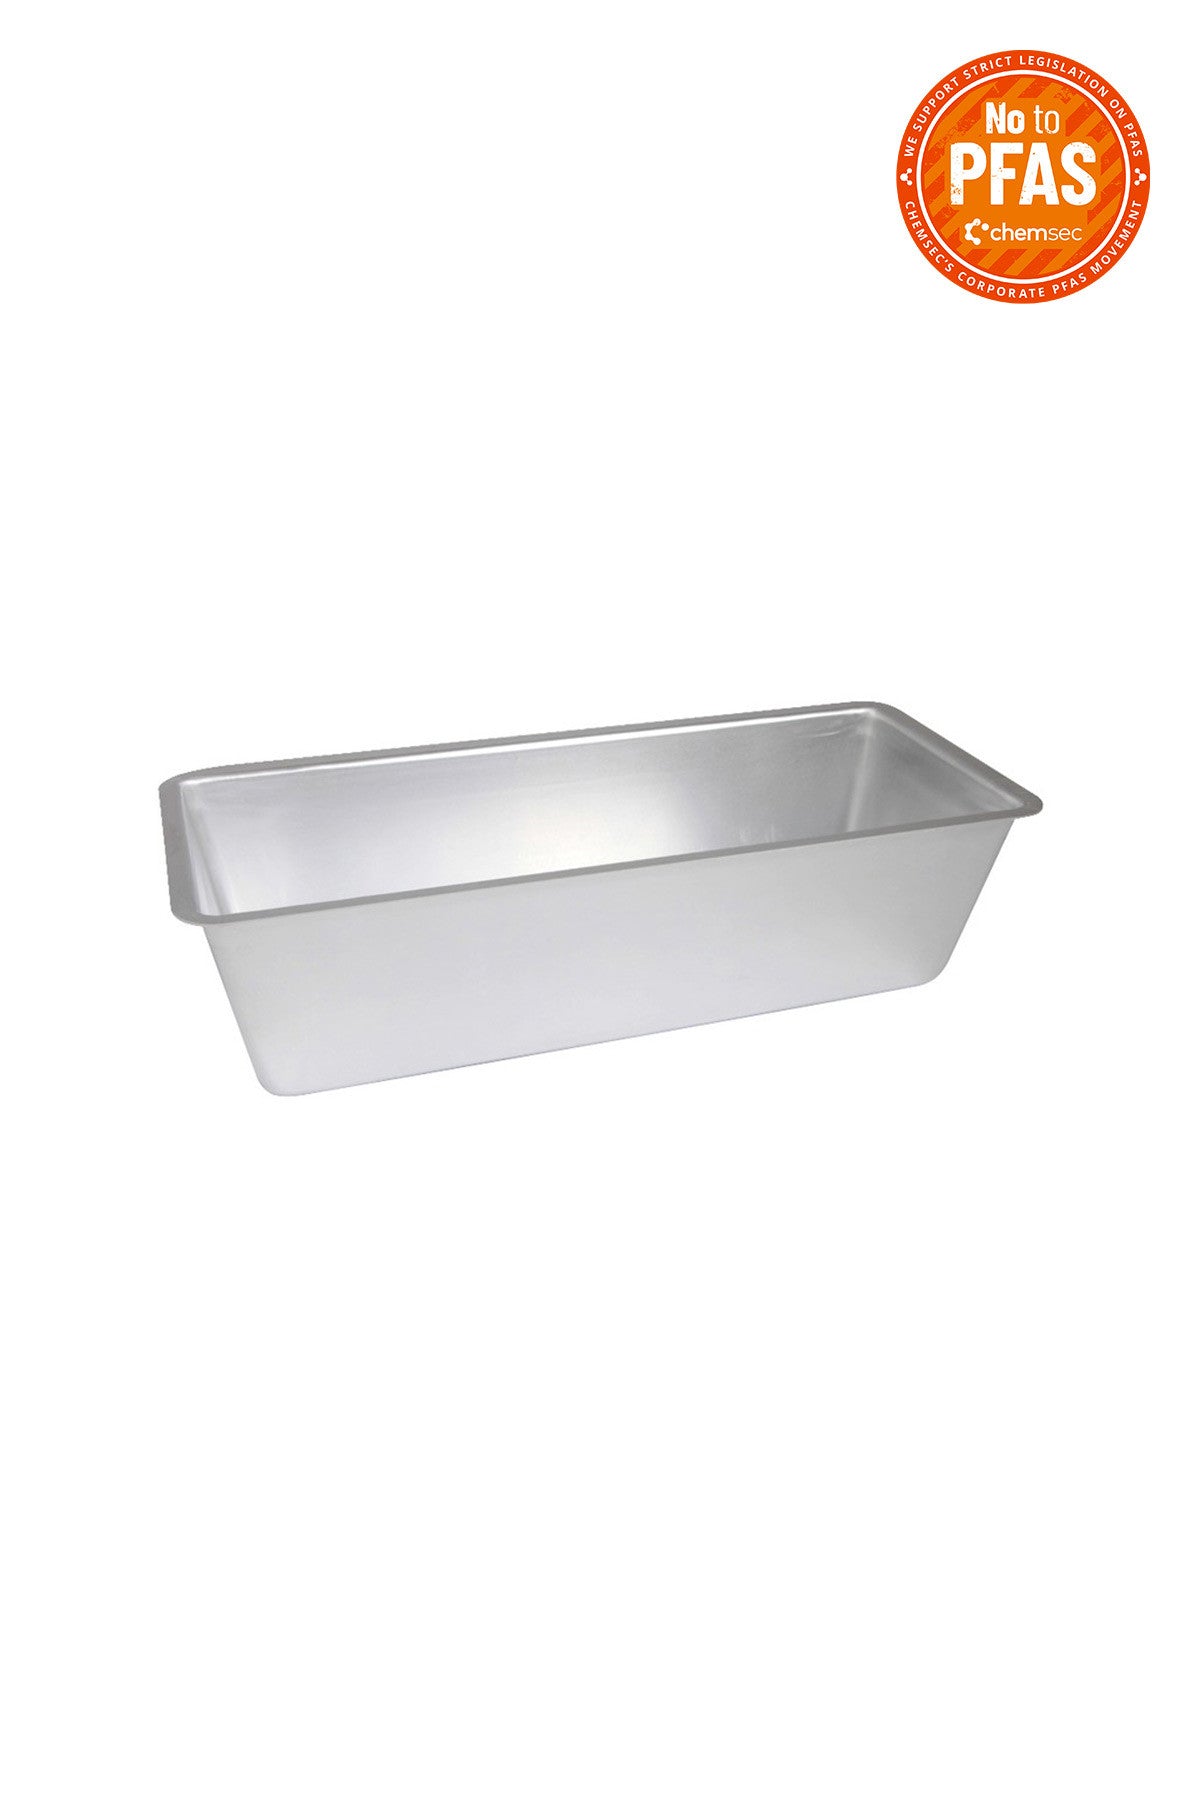 BREAD PAN aluminium 30 cm